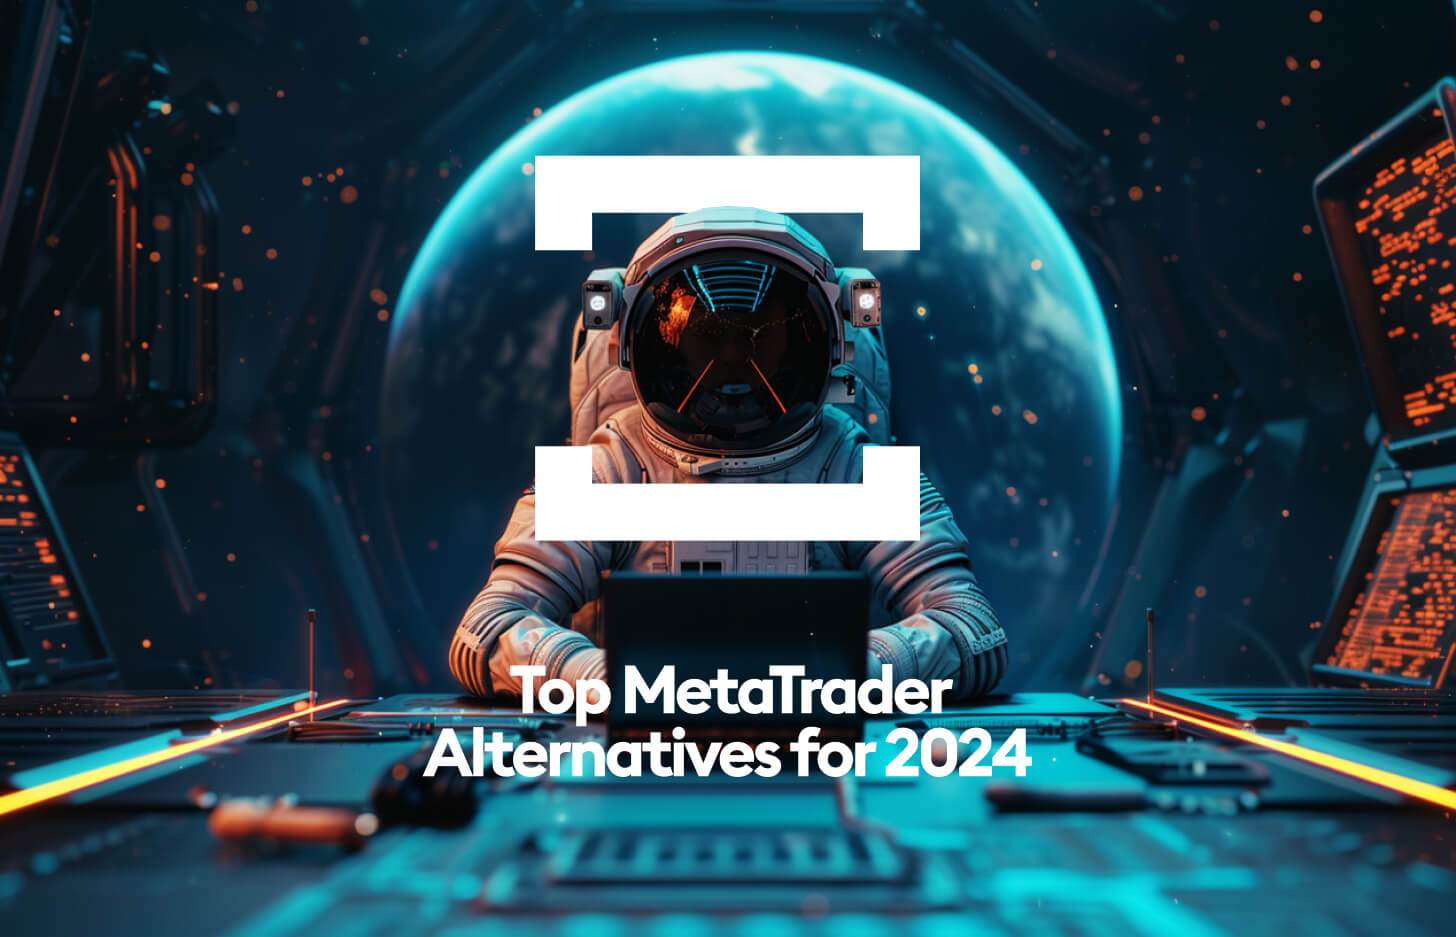 Top MetaTrader Alternatives for 2024